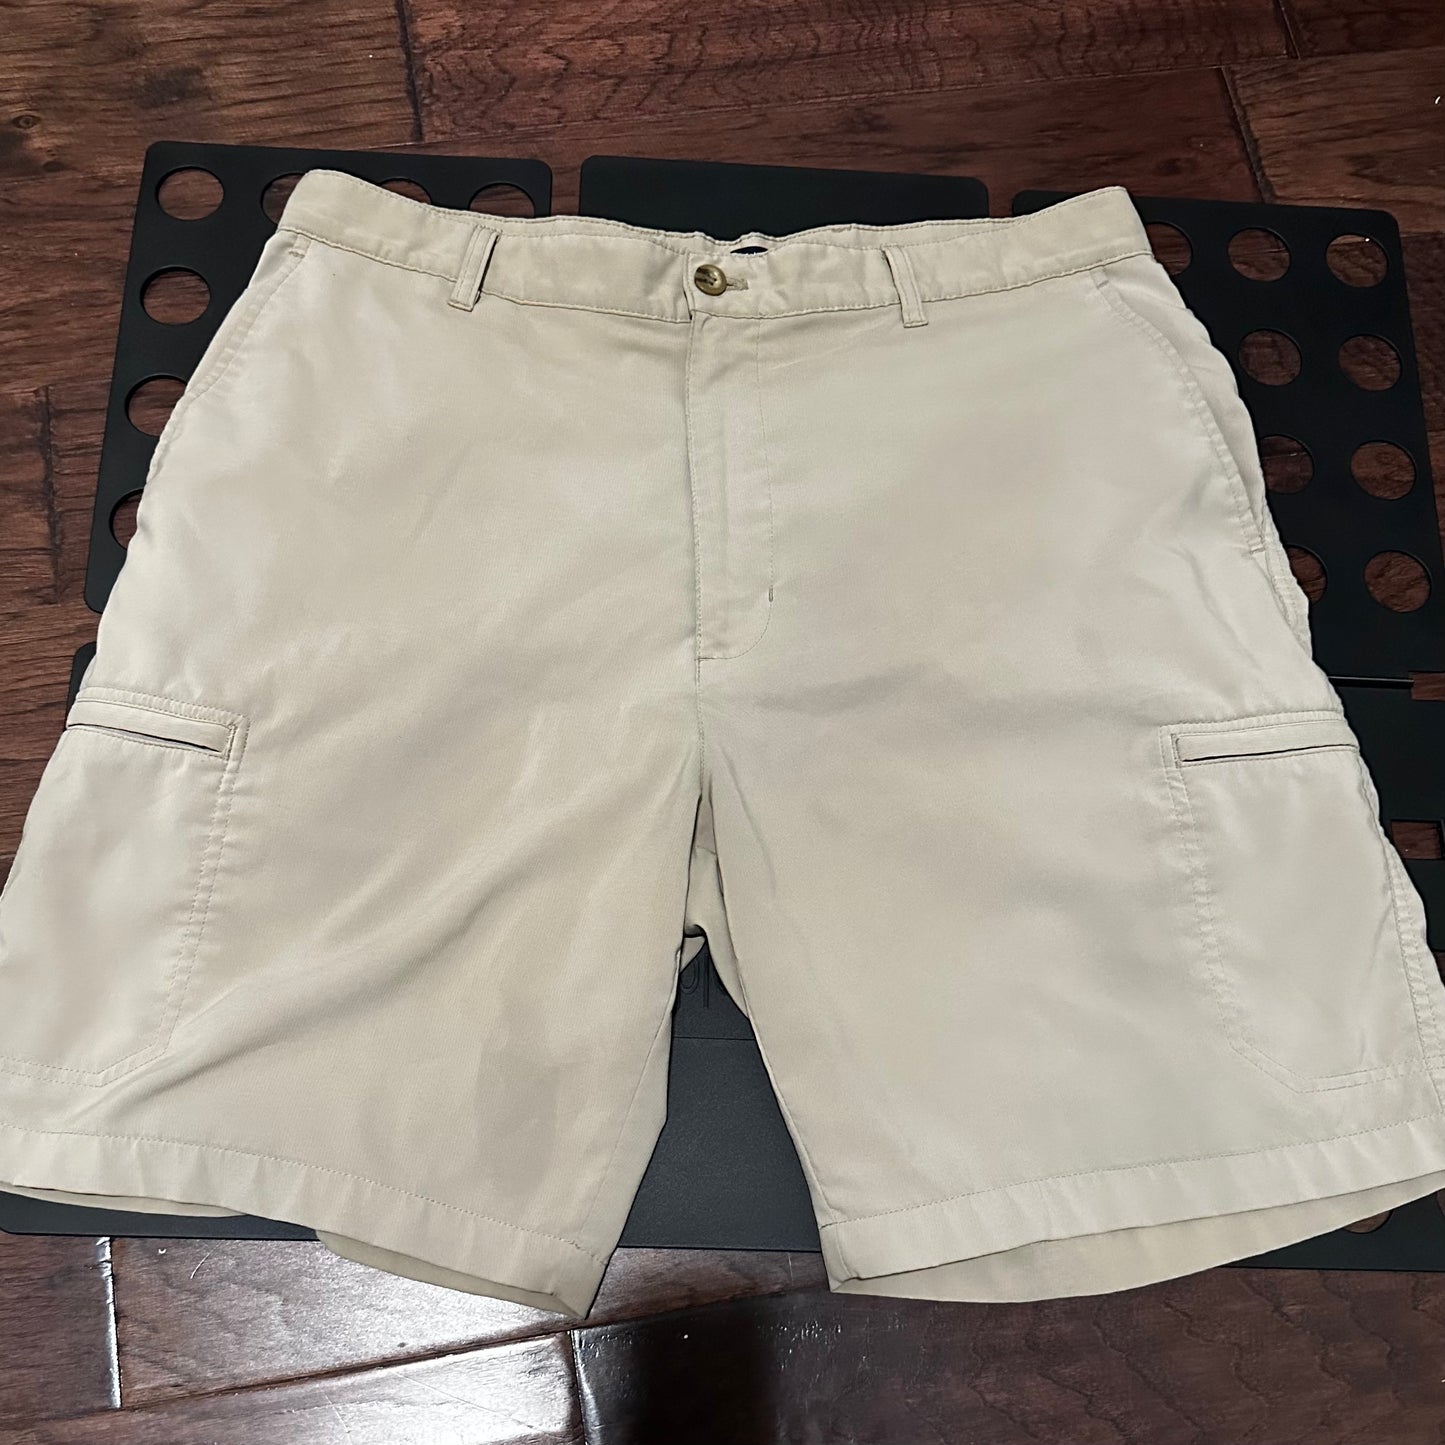 Chaps Khaki shorts - 36w